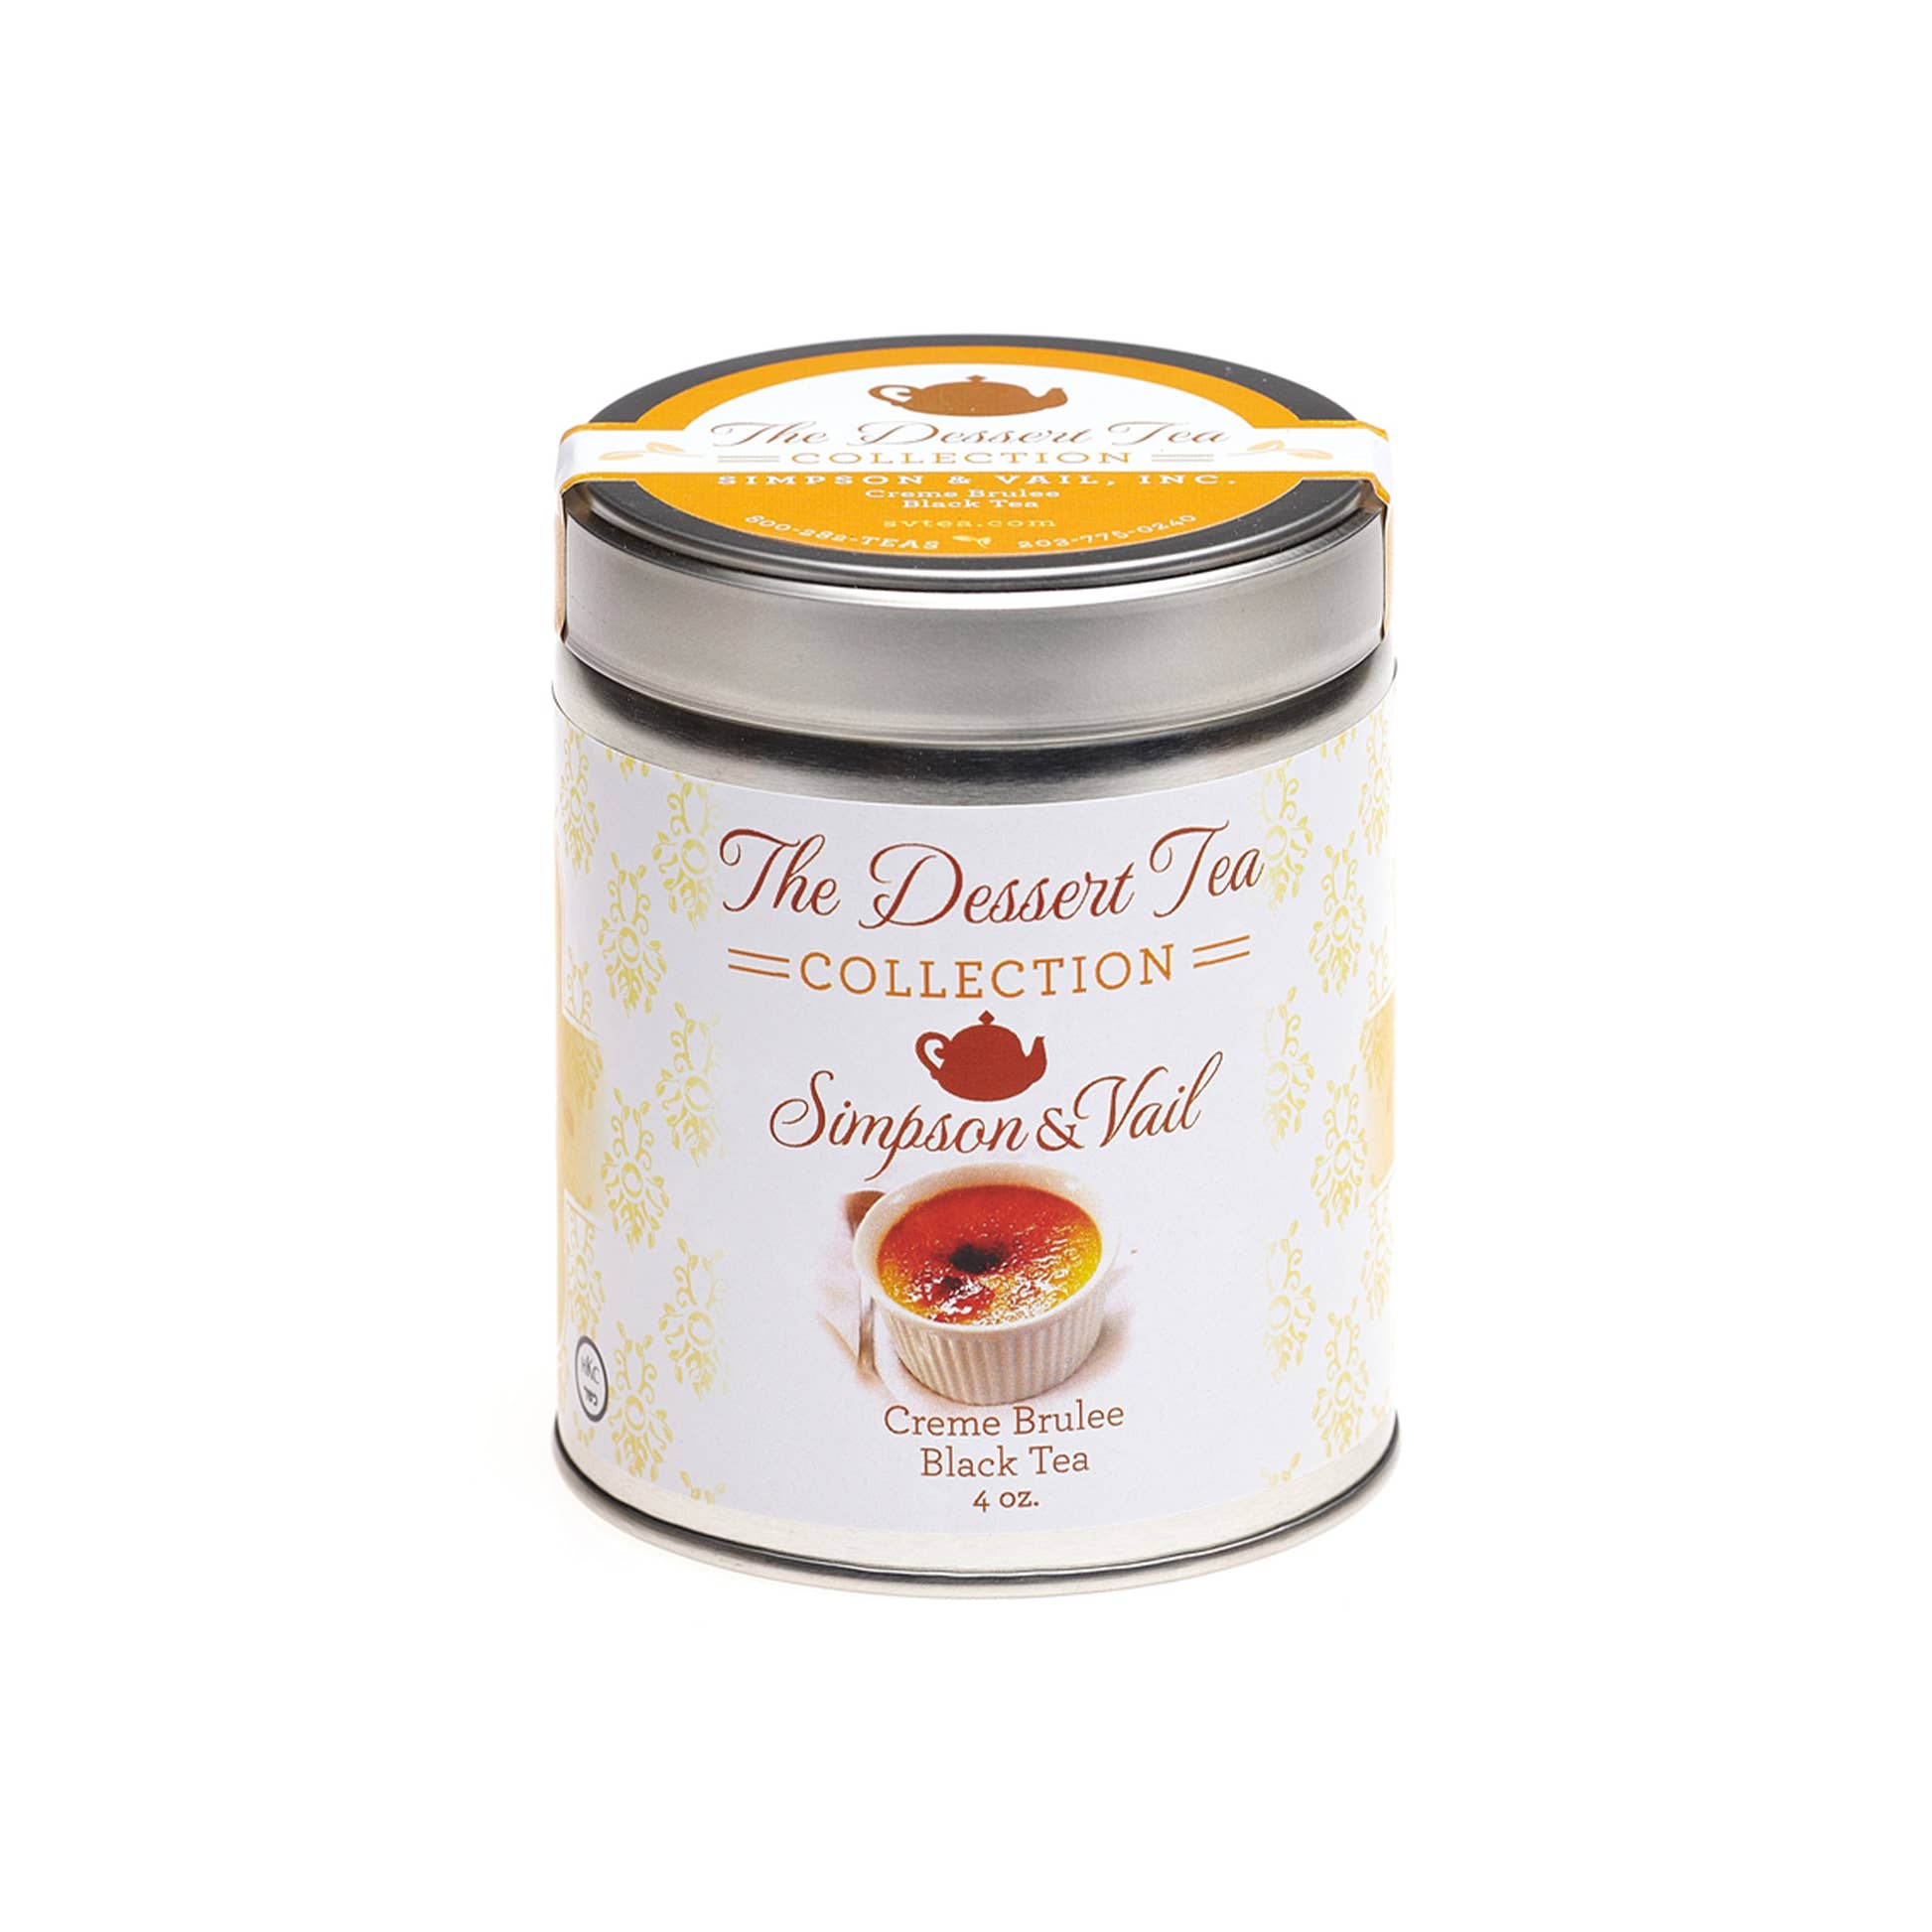 Crème Brulee Black Tea Simpson & Vail The Dessert Tea Collection loose leaf tea tin